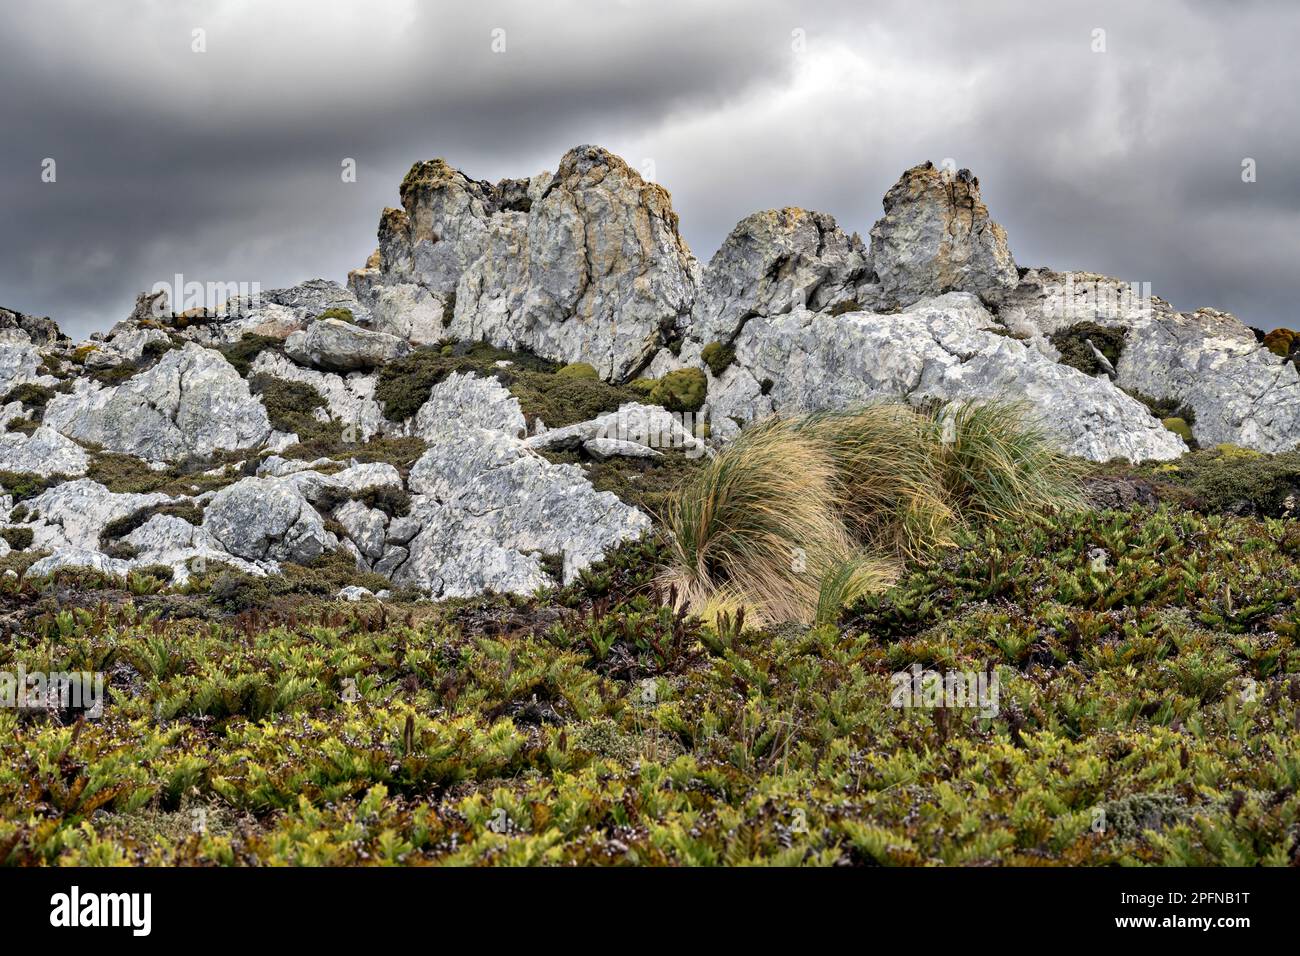 Islas Malvinas, isla carcass. Vegetación rocosa Foto de stock